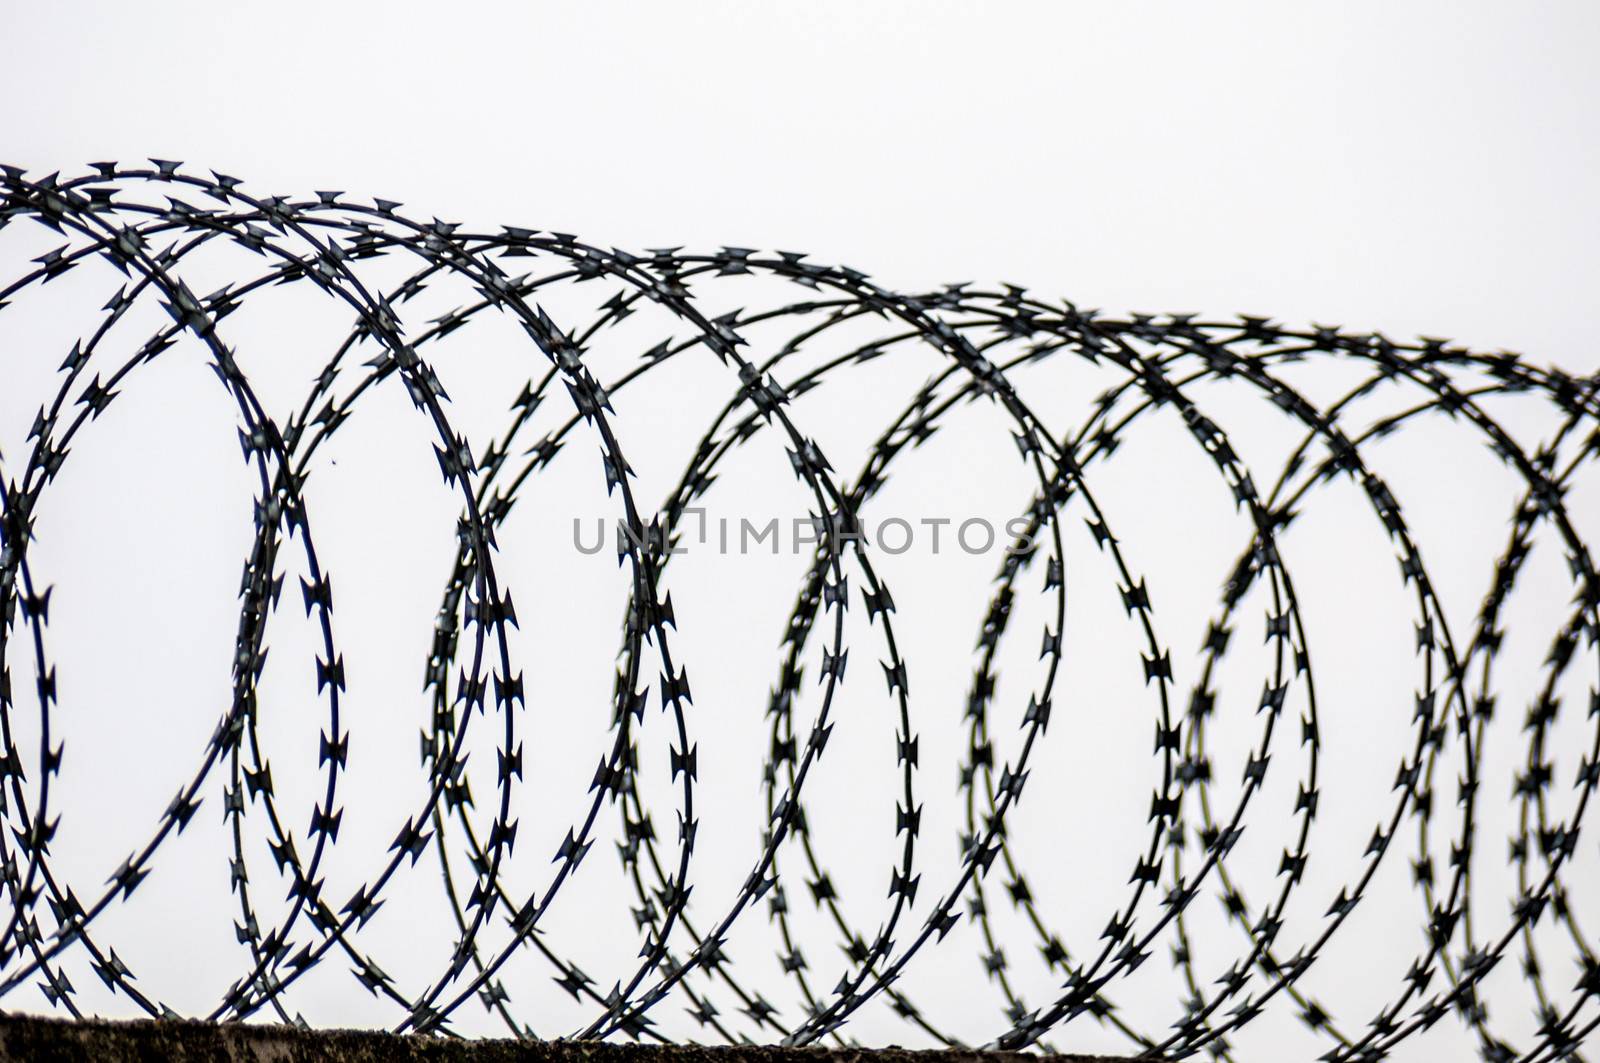 Barbed wire by Jule_Berlin